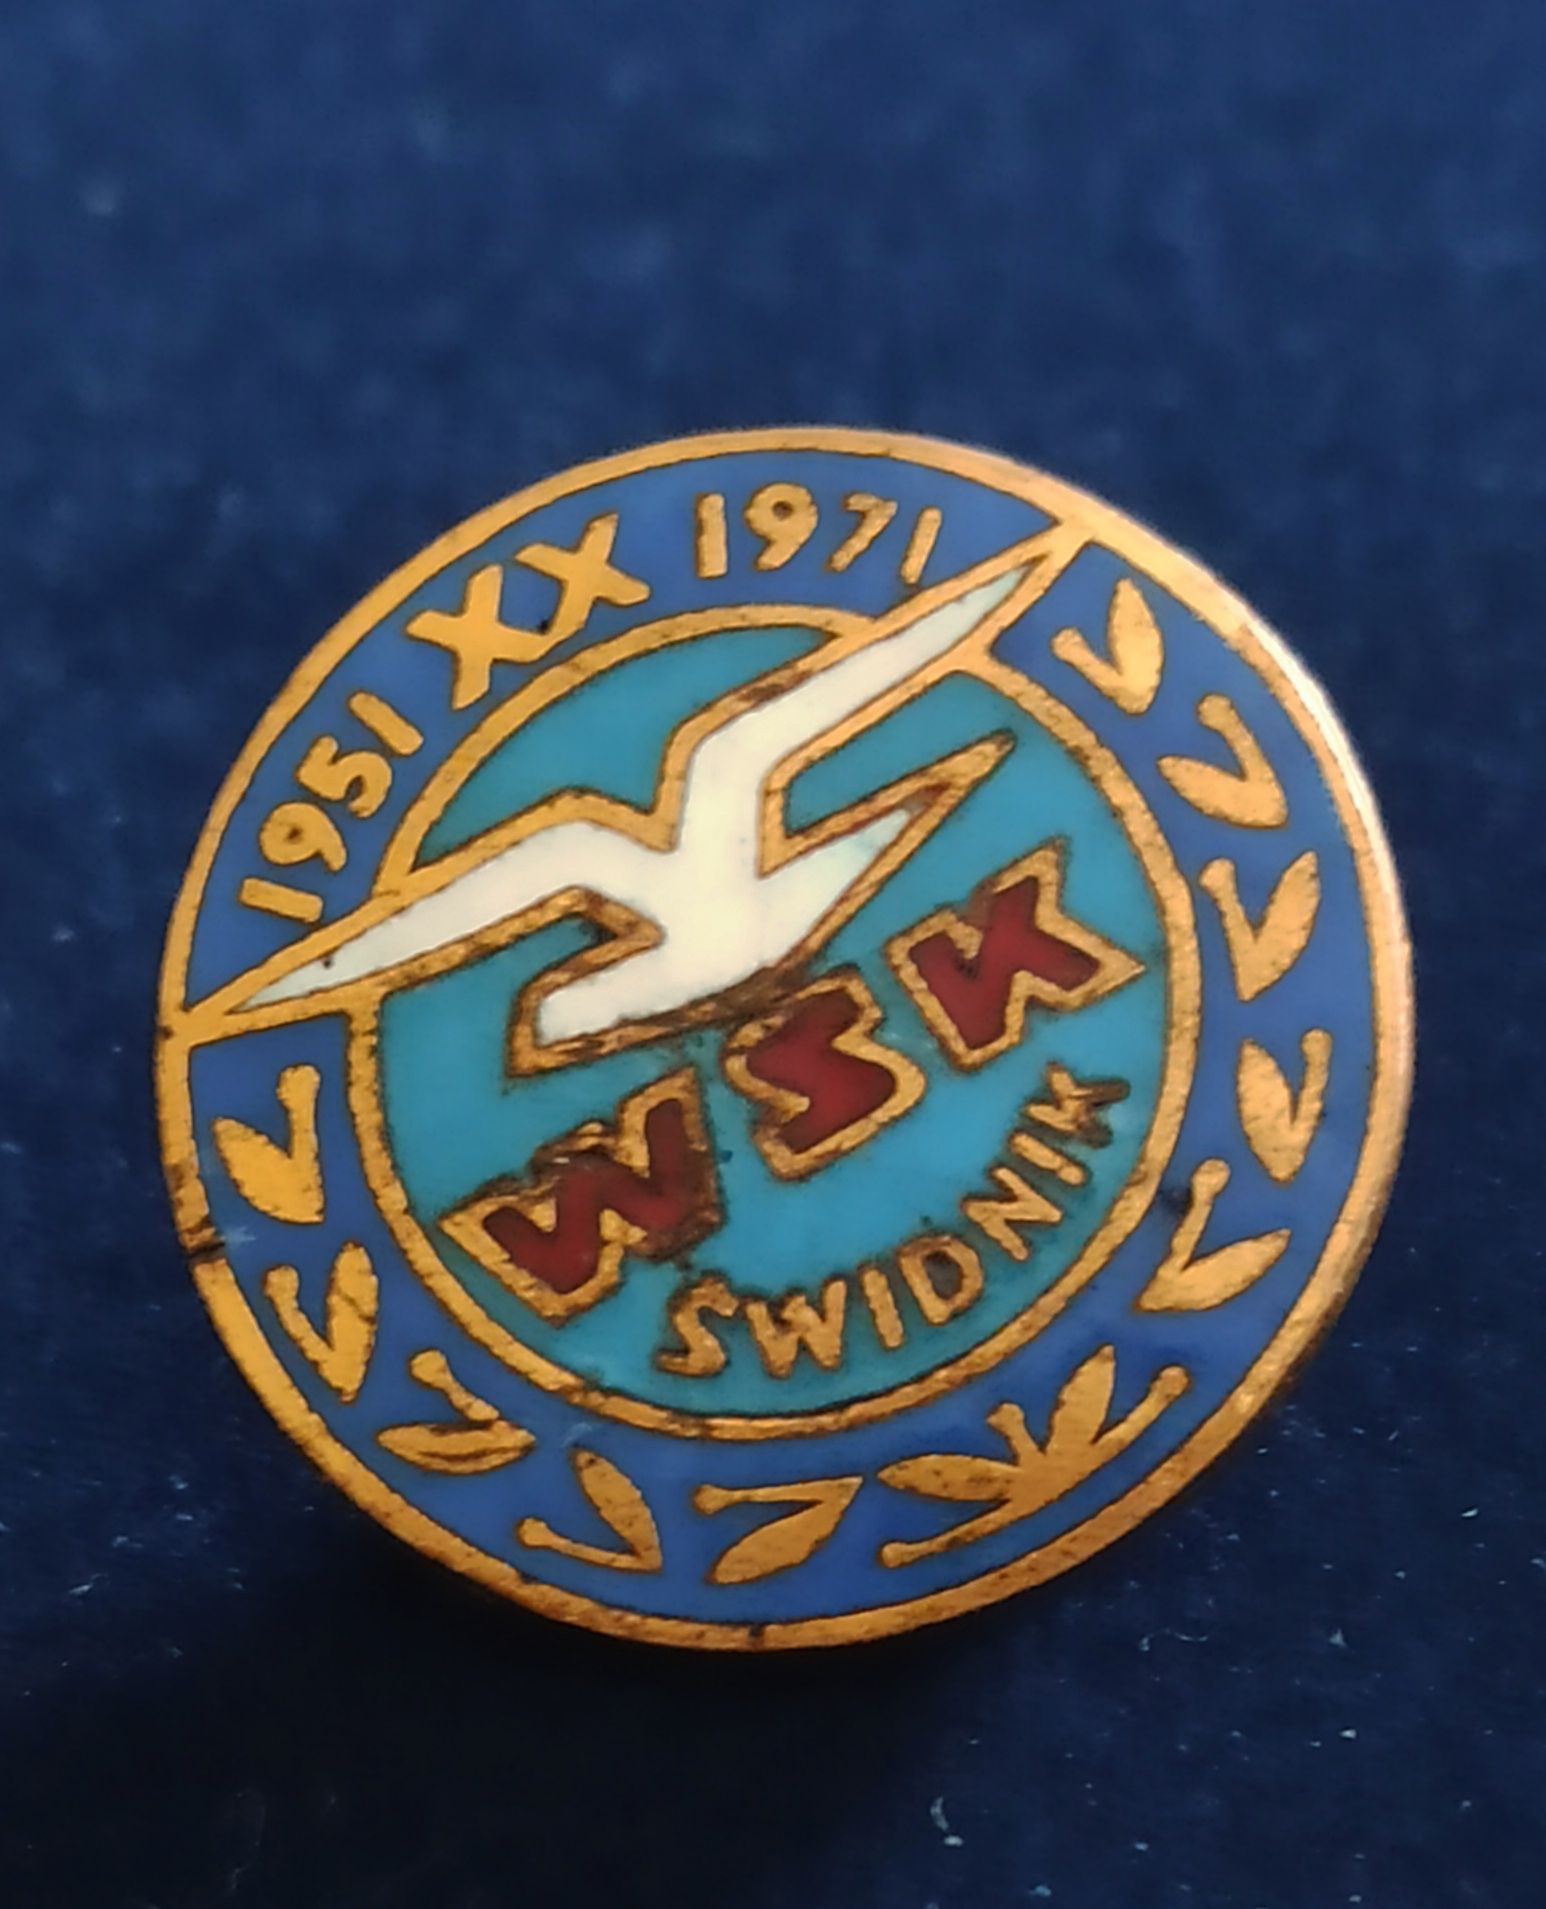 Emblemat na wkrętke 20 lat WSK Swidnik